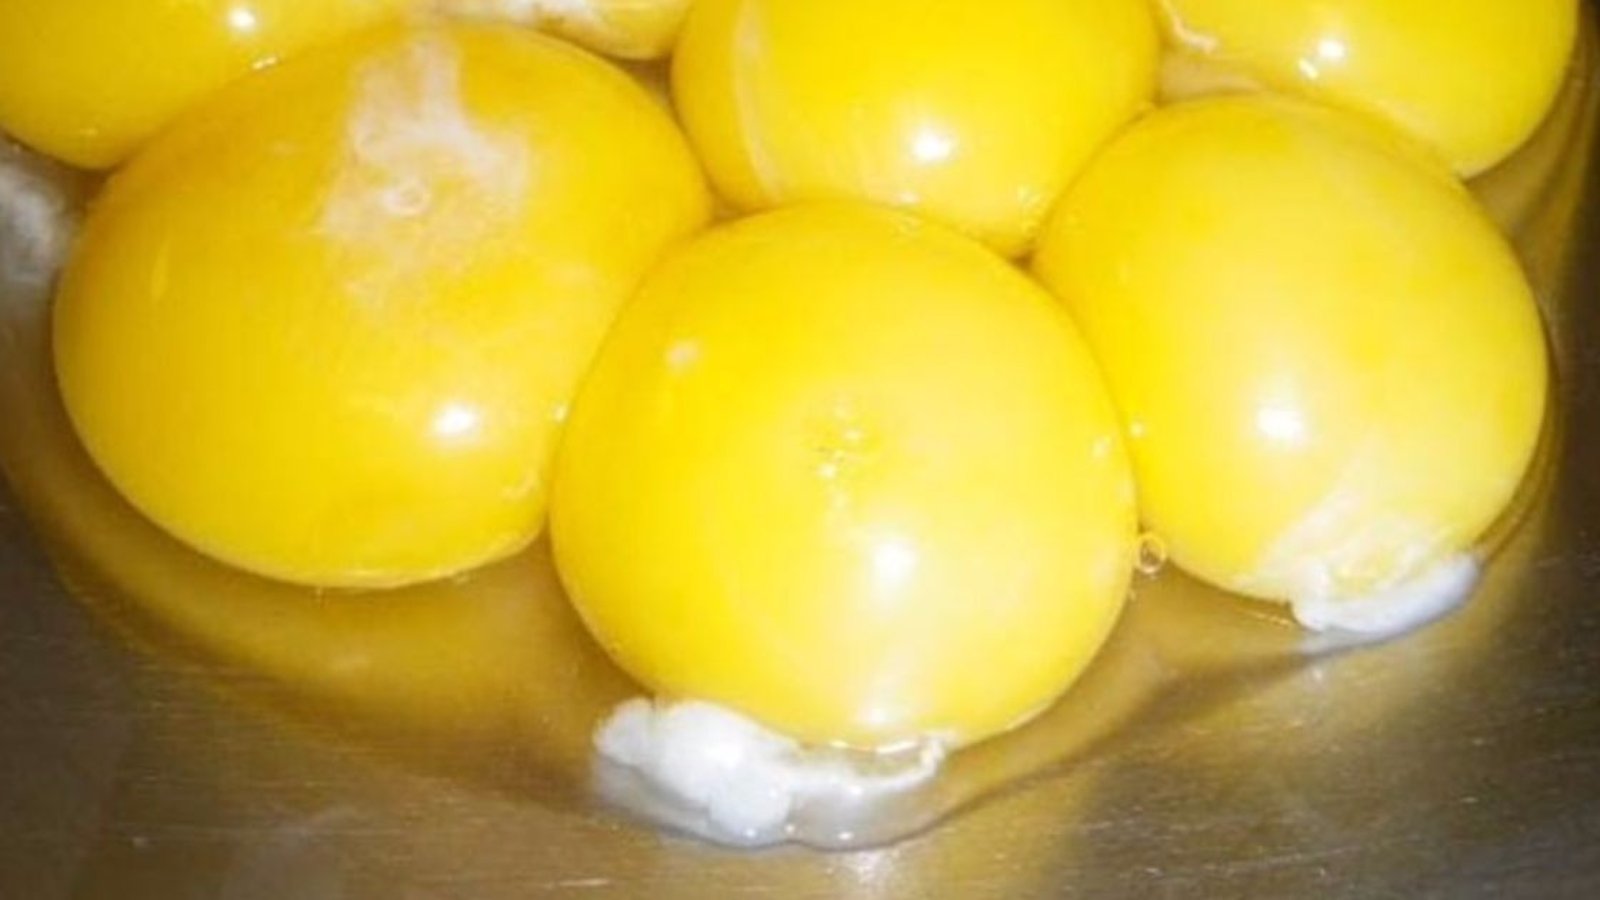 Le filament blanc dans le jaune d’œuf n’est pas ce que vous croyez! Sa présence est très importante!